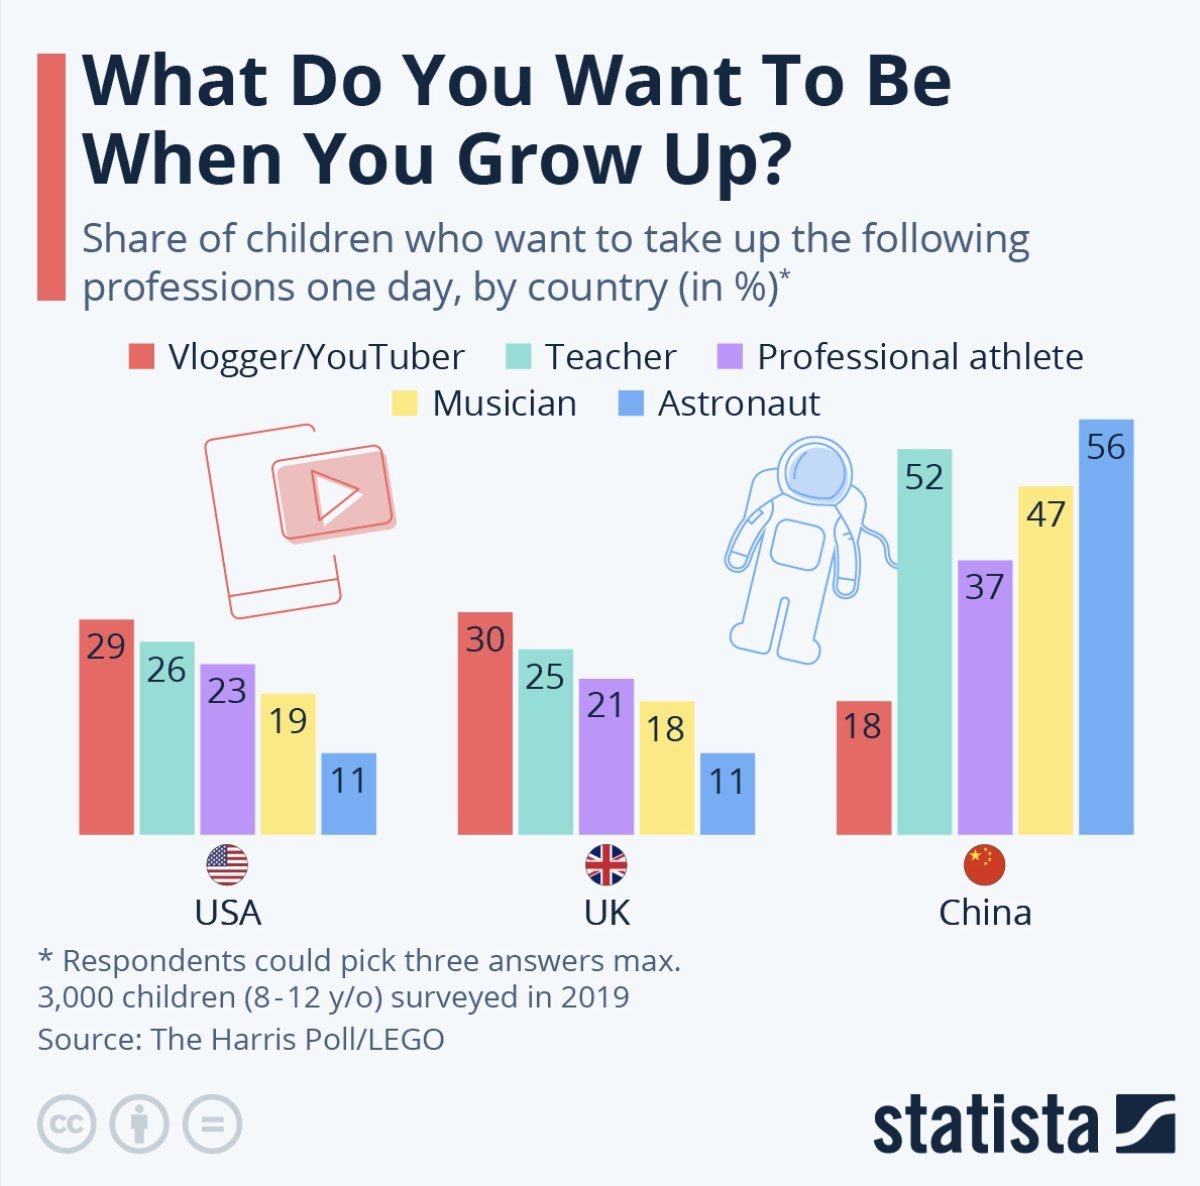 Kim chcesz zostać, gdy dorośniesz?, 2019